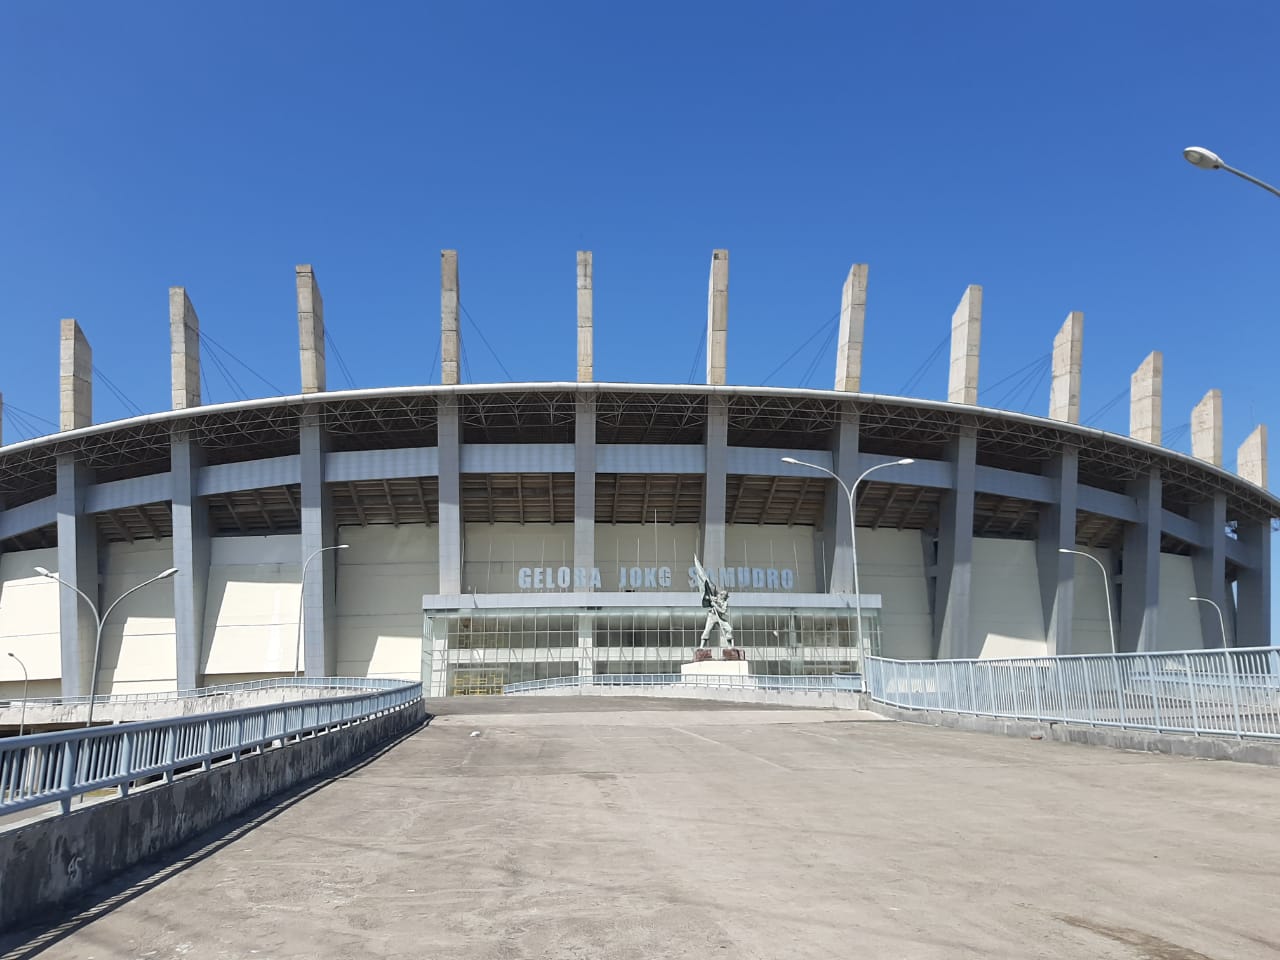 11 Astounding Facts About Estadio Gran Parque Central 